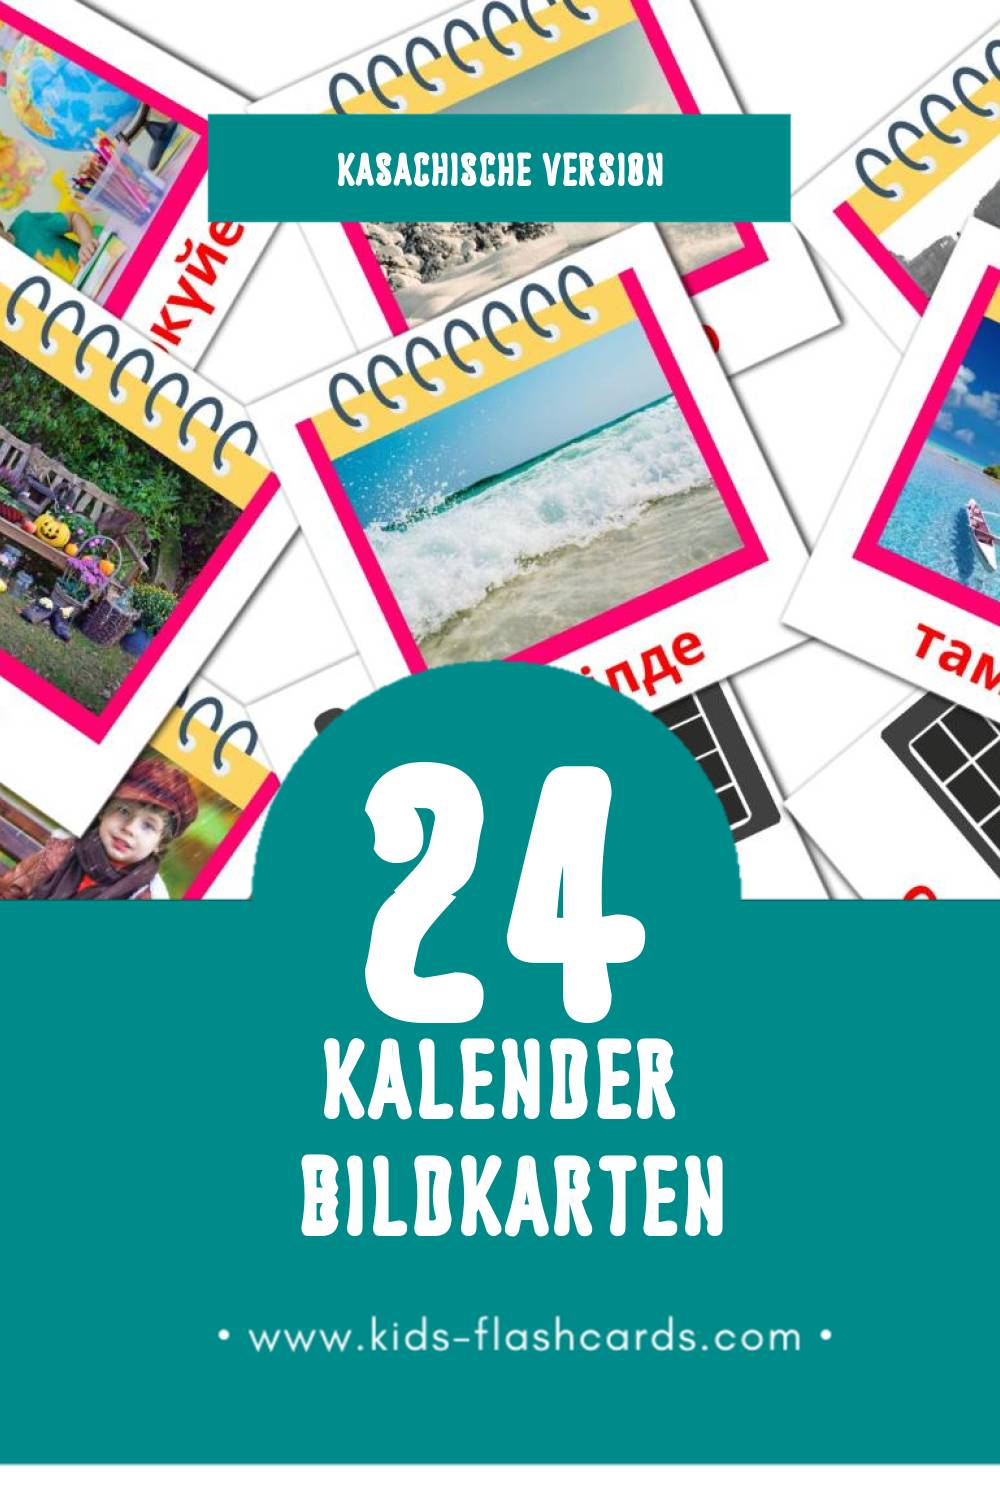 Visual Күнтізбе Flashcards für Kleinkinder (24 Karten in Kasachisch)